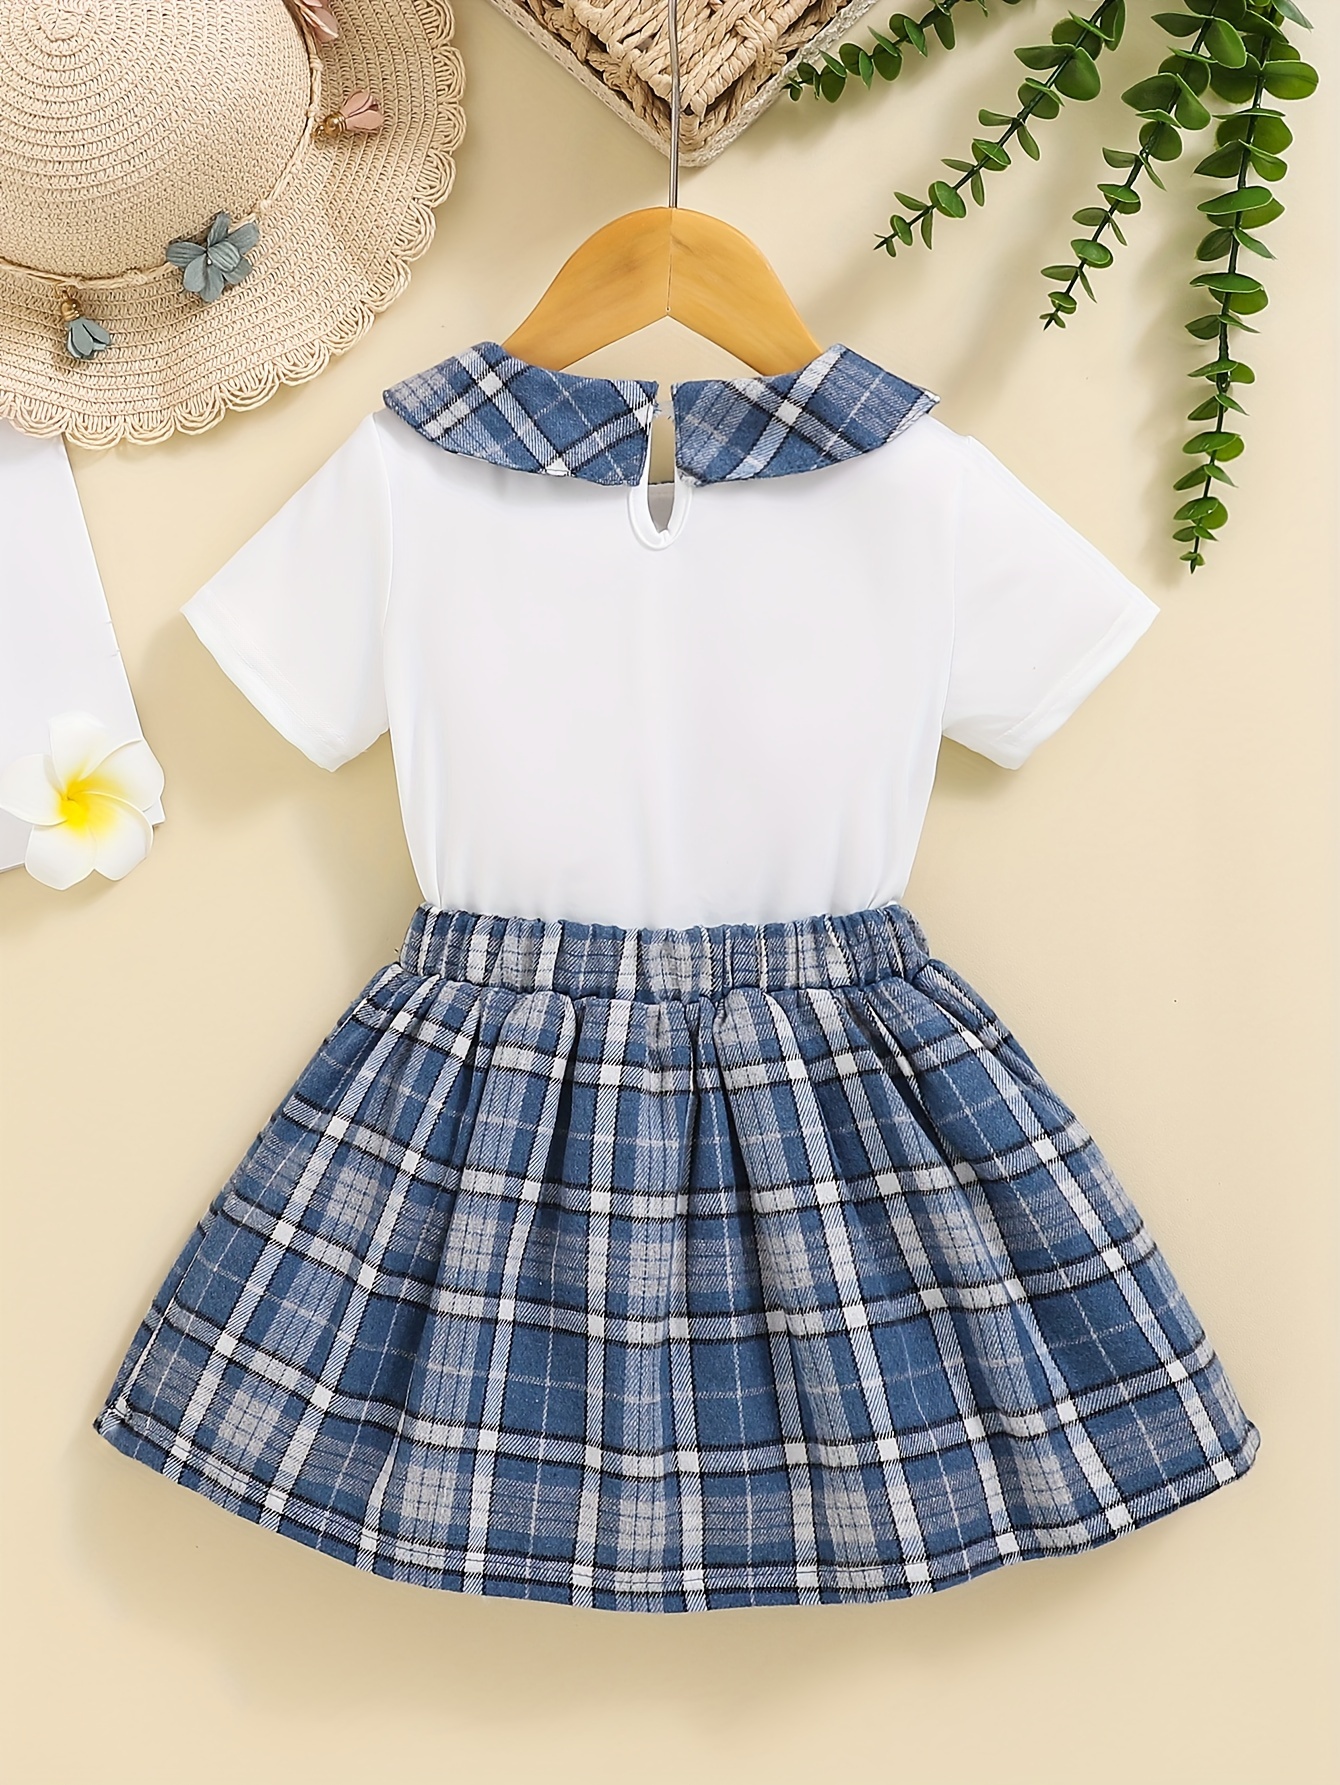 Kids Toddler Baby Girls T-shirt Tops Skirt Dress Outfits Set 2PCS